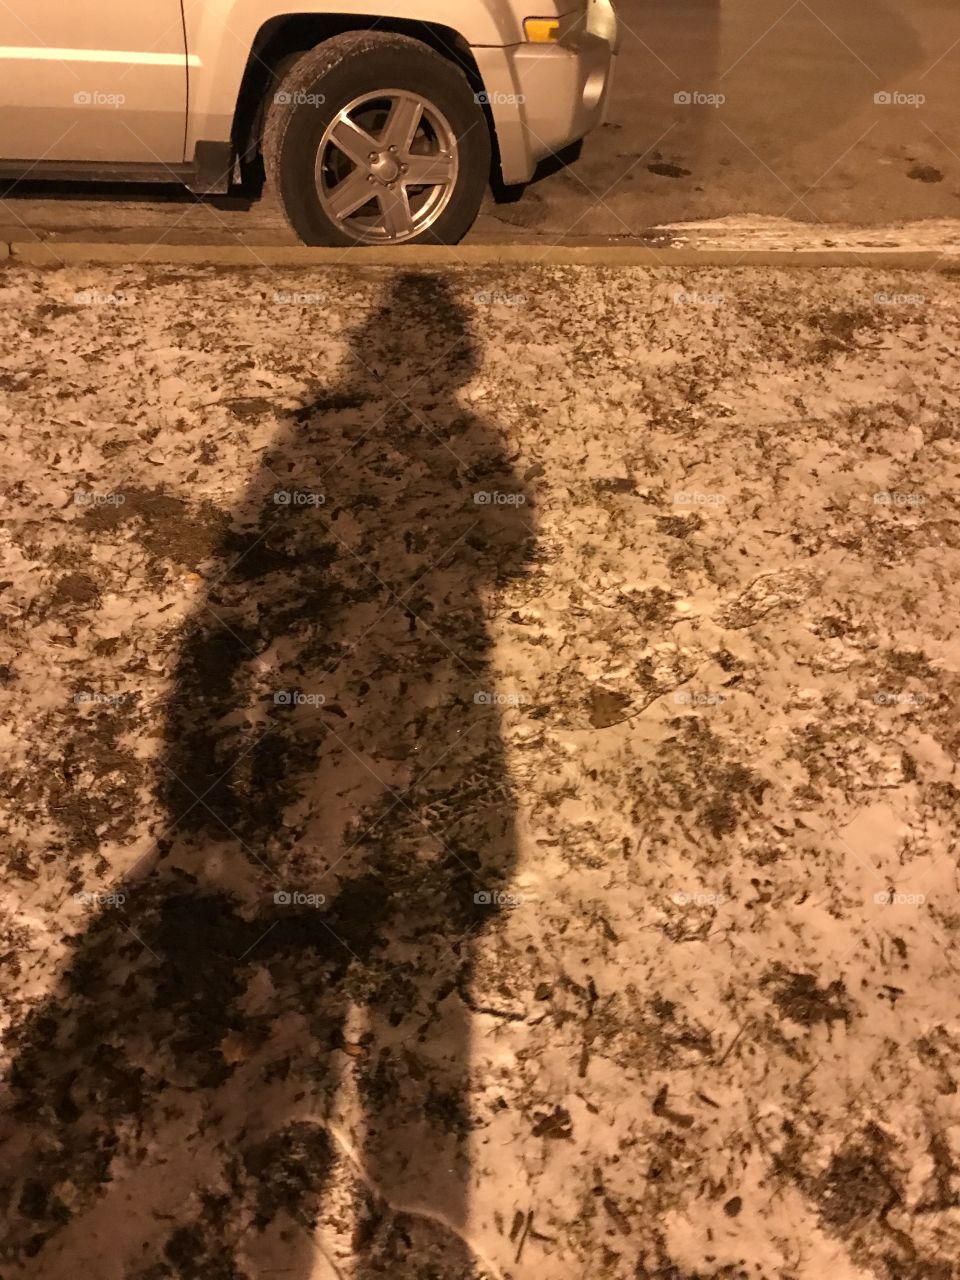 A snowy shadow